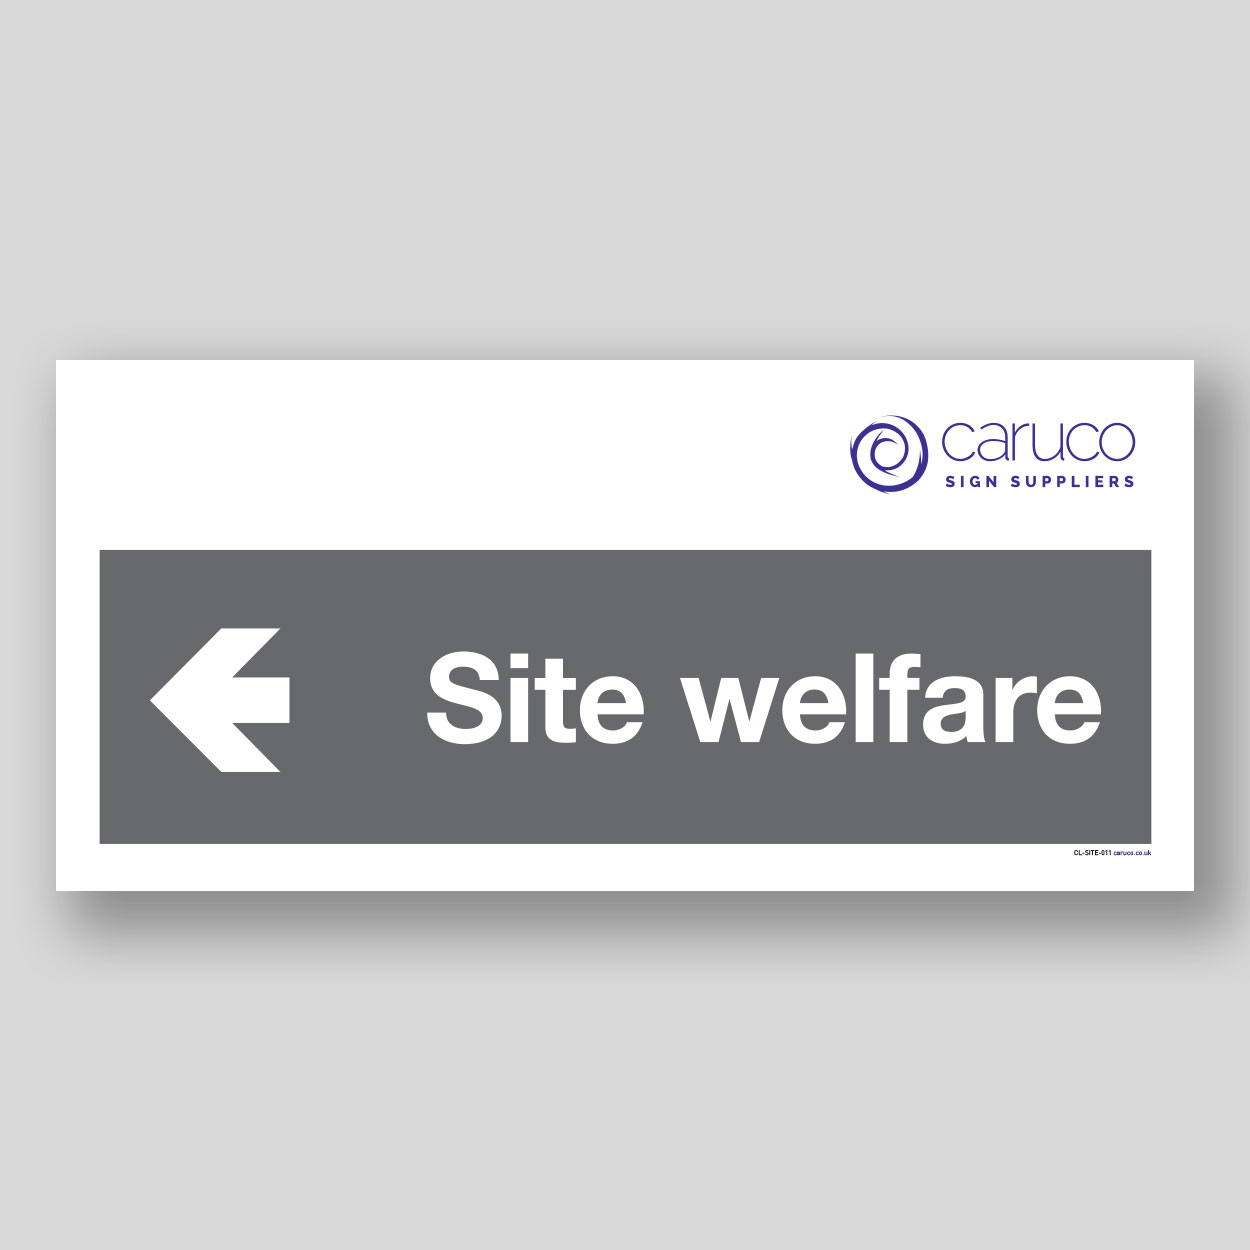 CL-SITE-011 Site welfare with left arrow